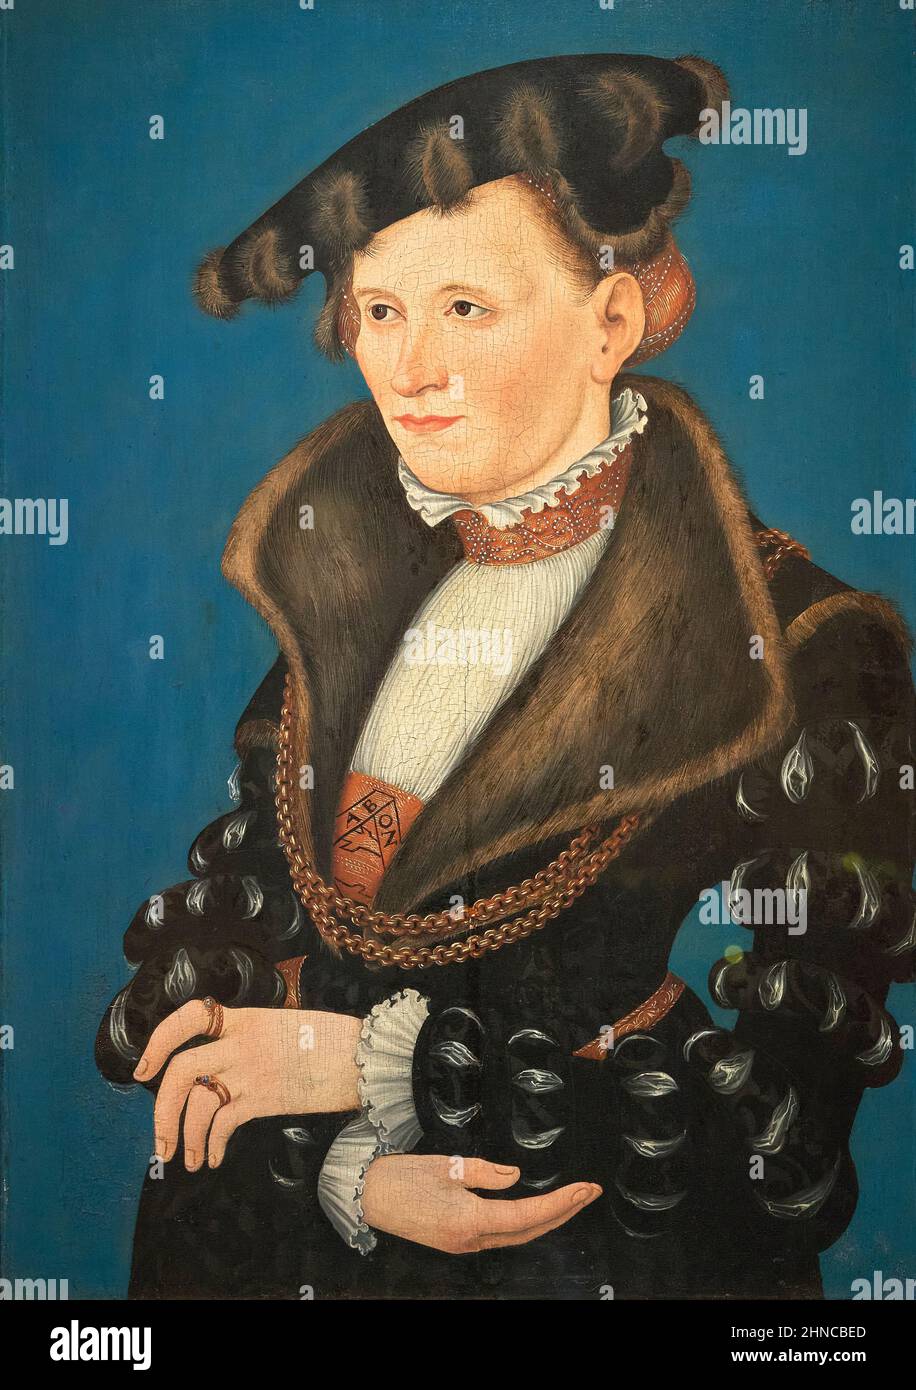 Lucas Cranach il giovane (1515-1586). Ritratto di una donna. 1539. Olio sul pannello. 61,5 x 42,2 cm. Lucas Cranach il giovane era un pa rinascimentale tedesco Foto Stock